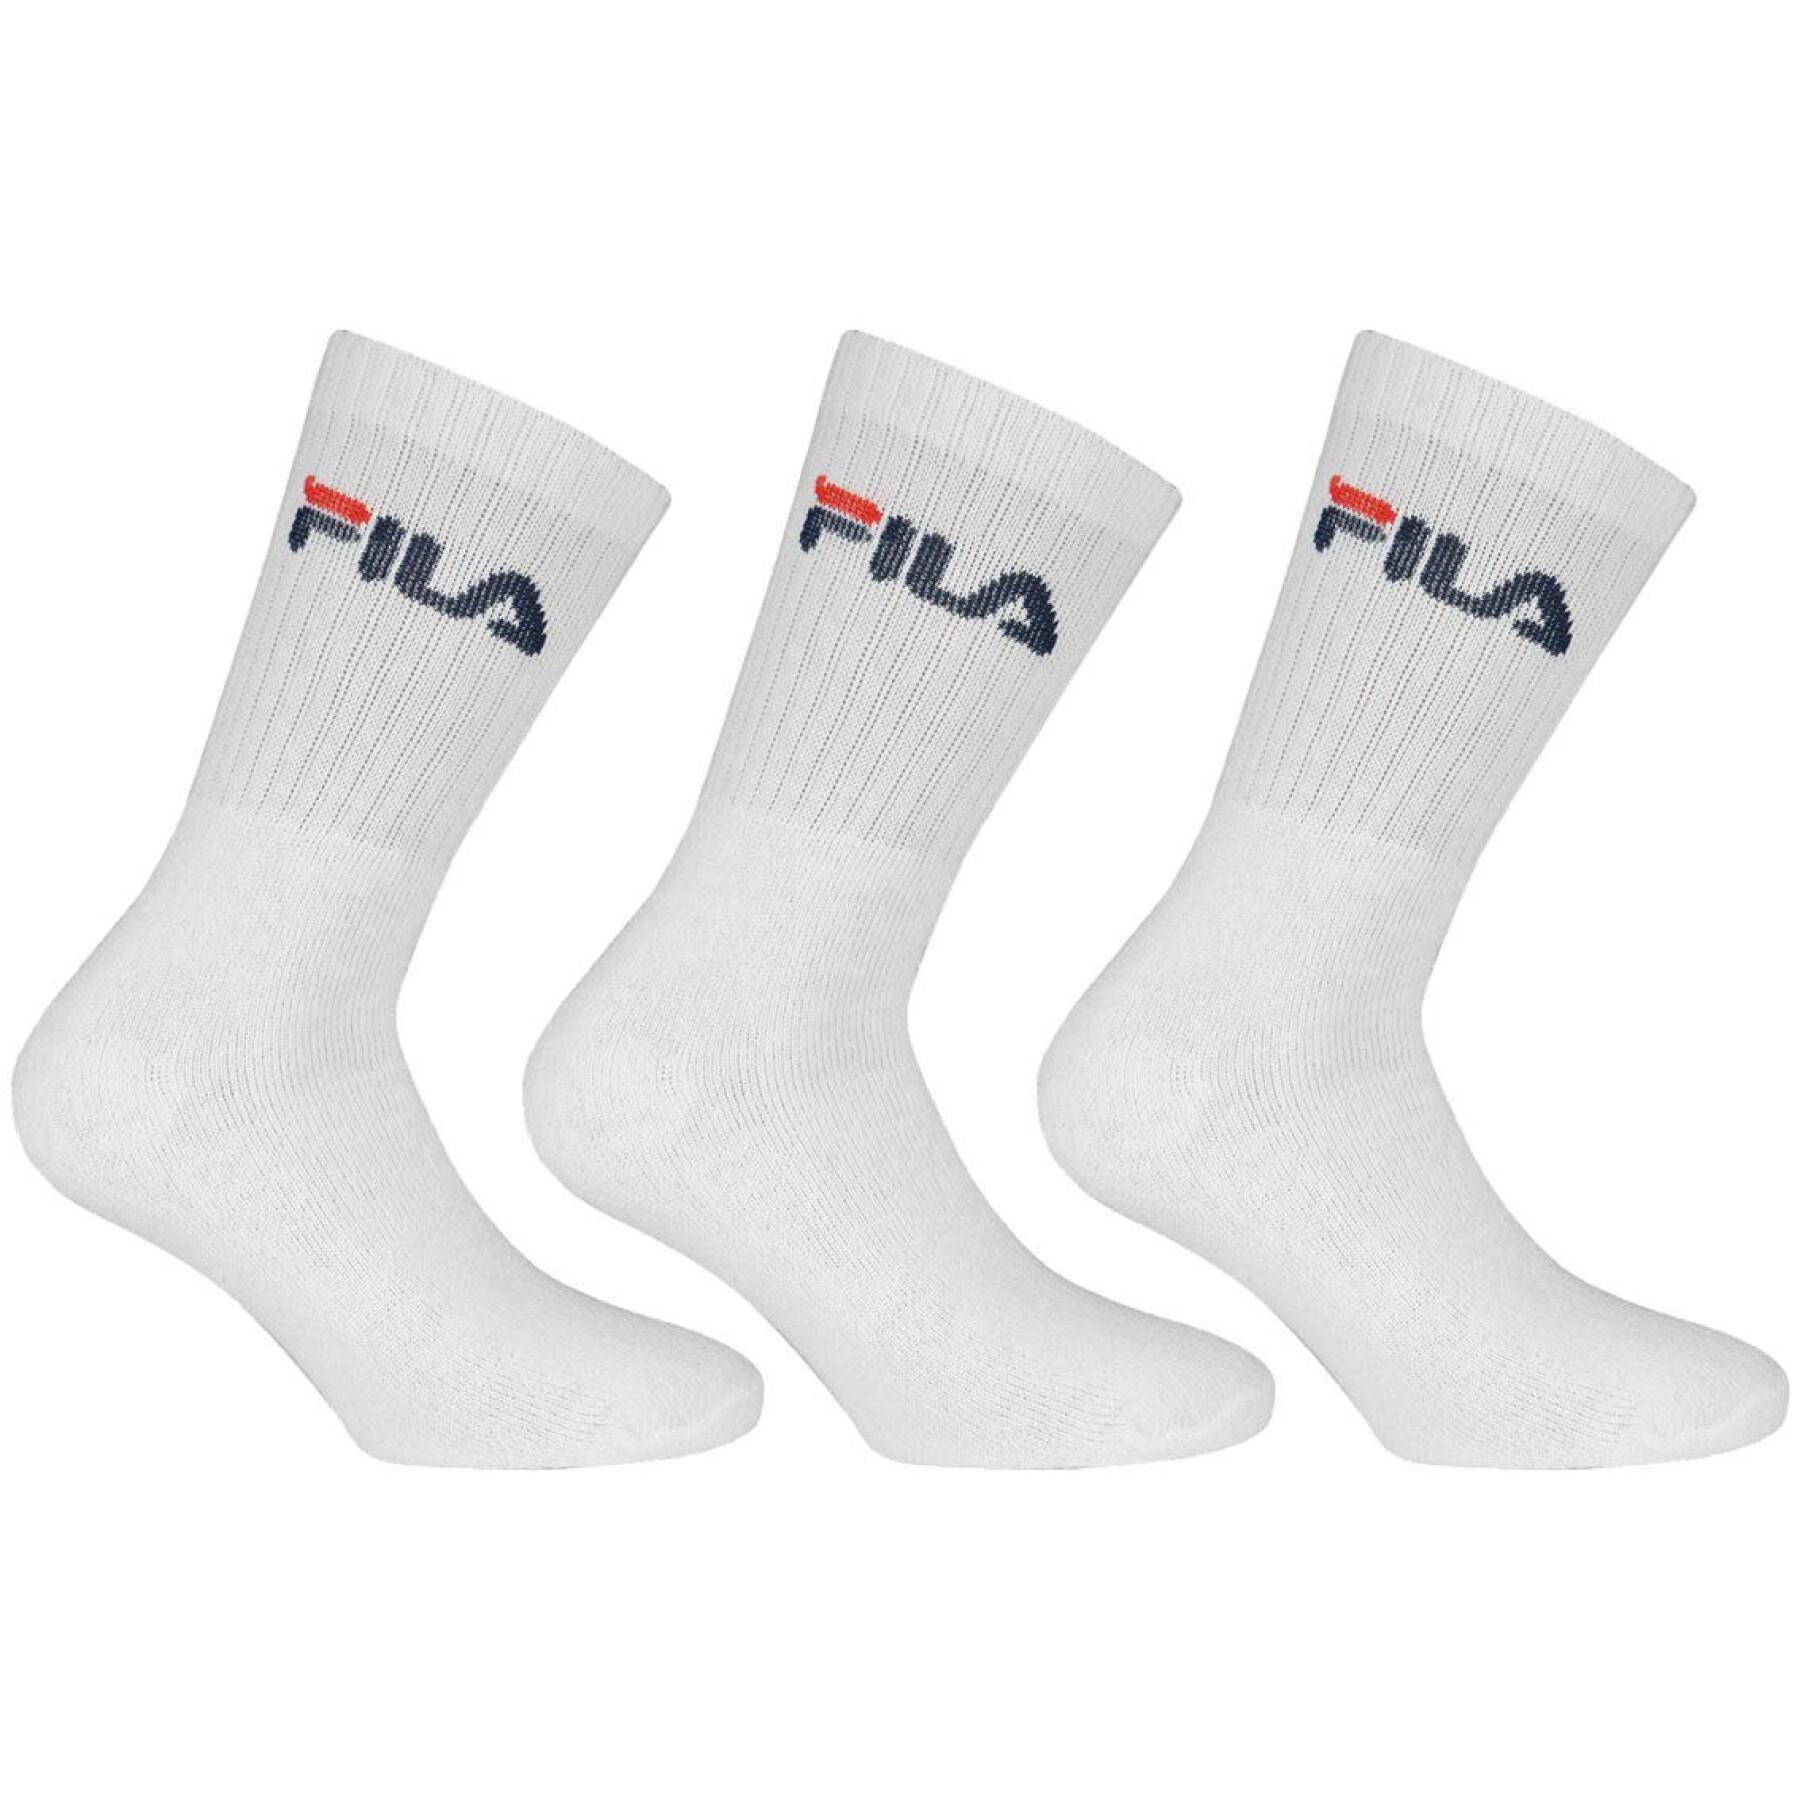 Tennis socks Fila (x3)